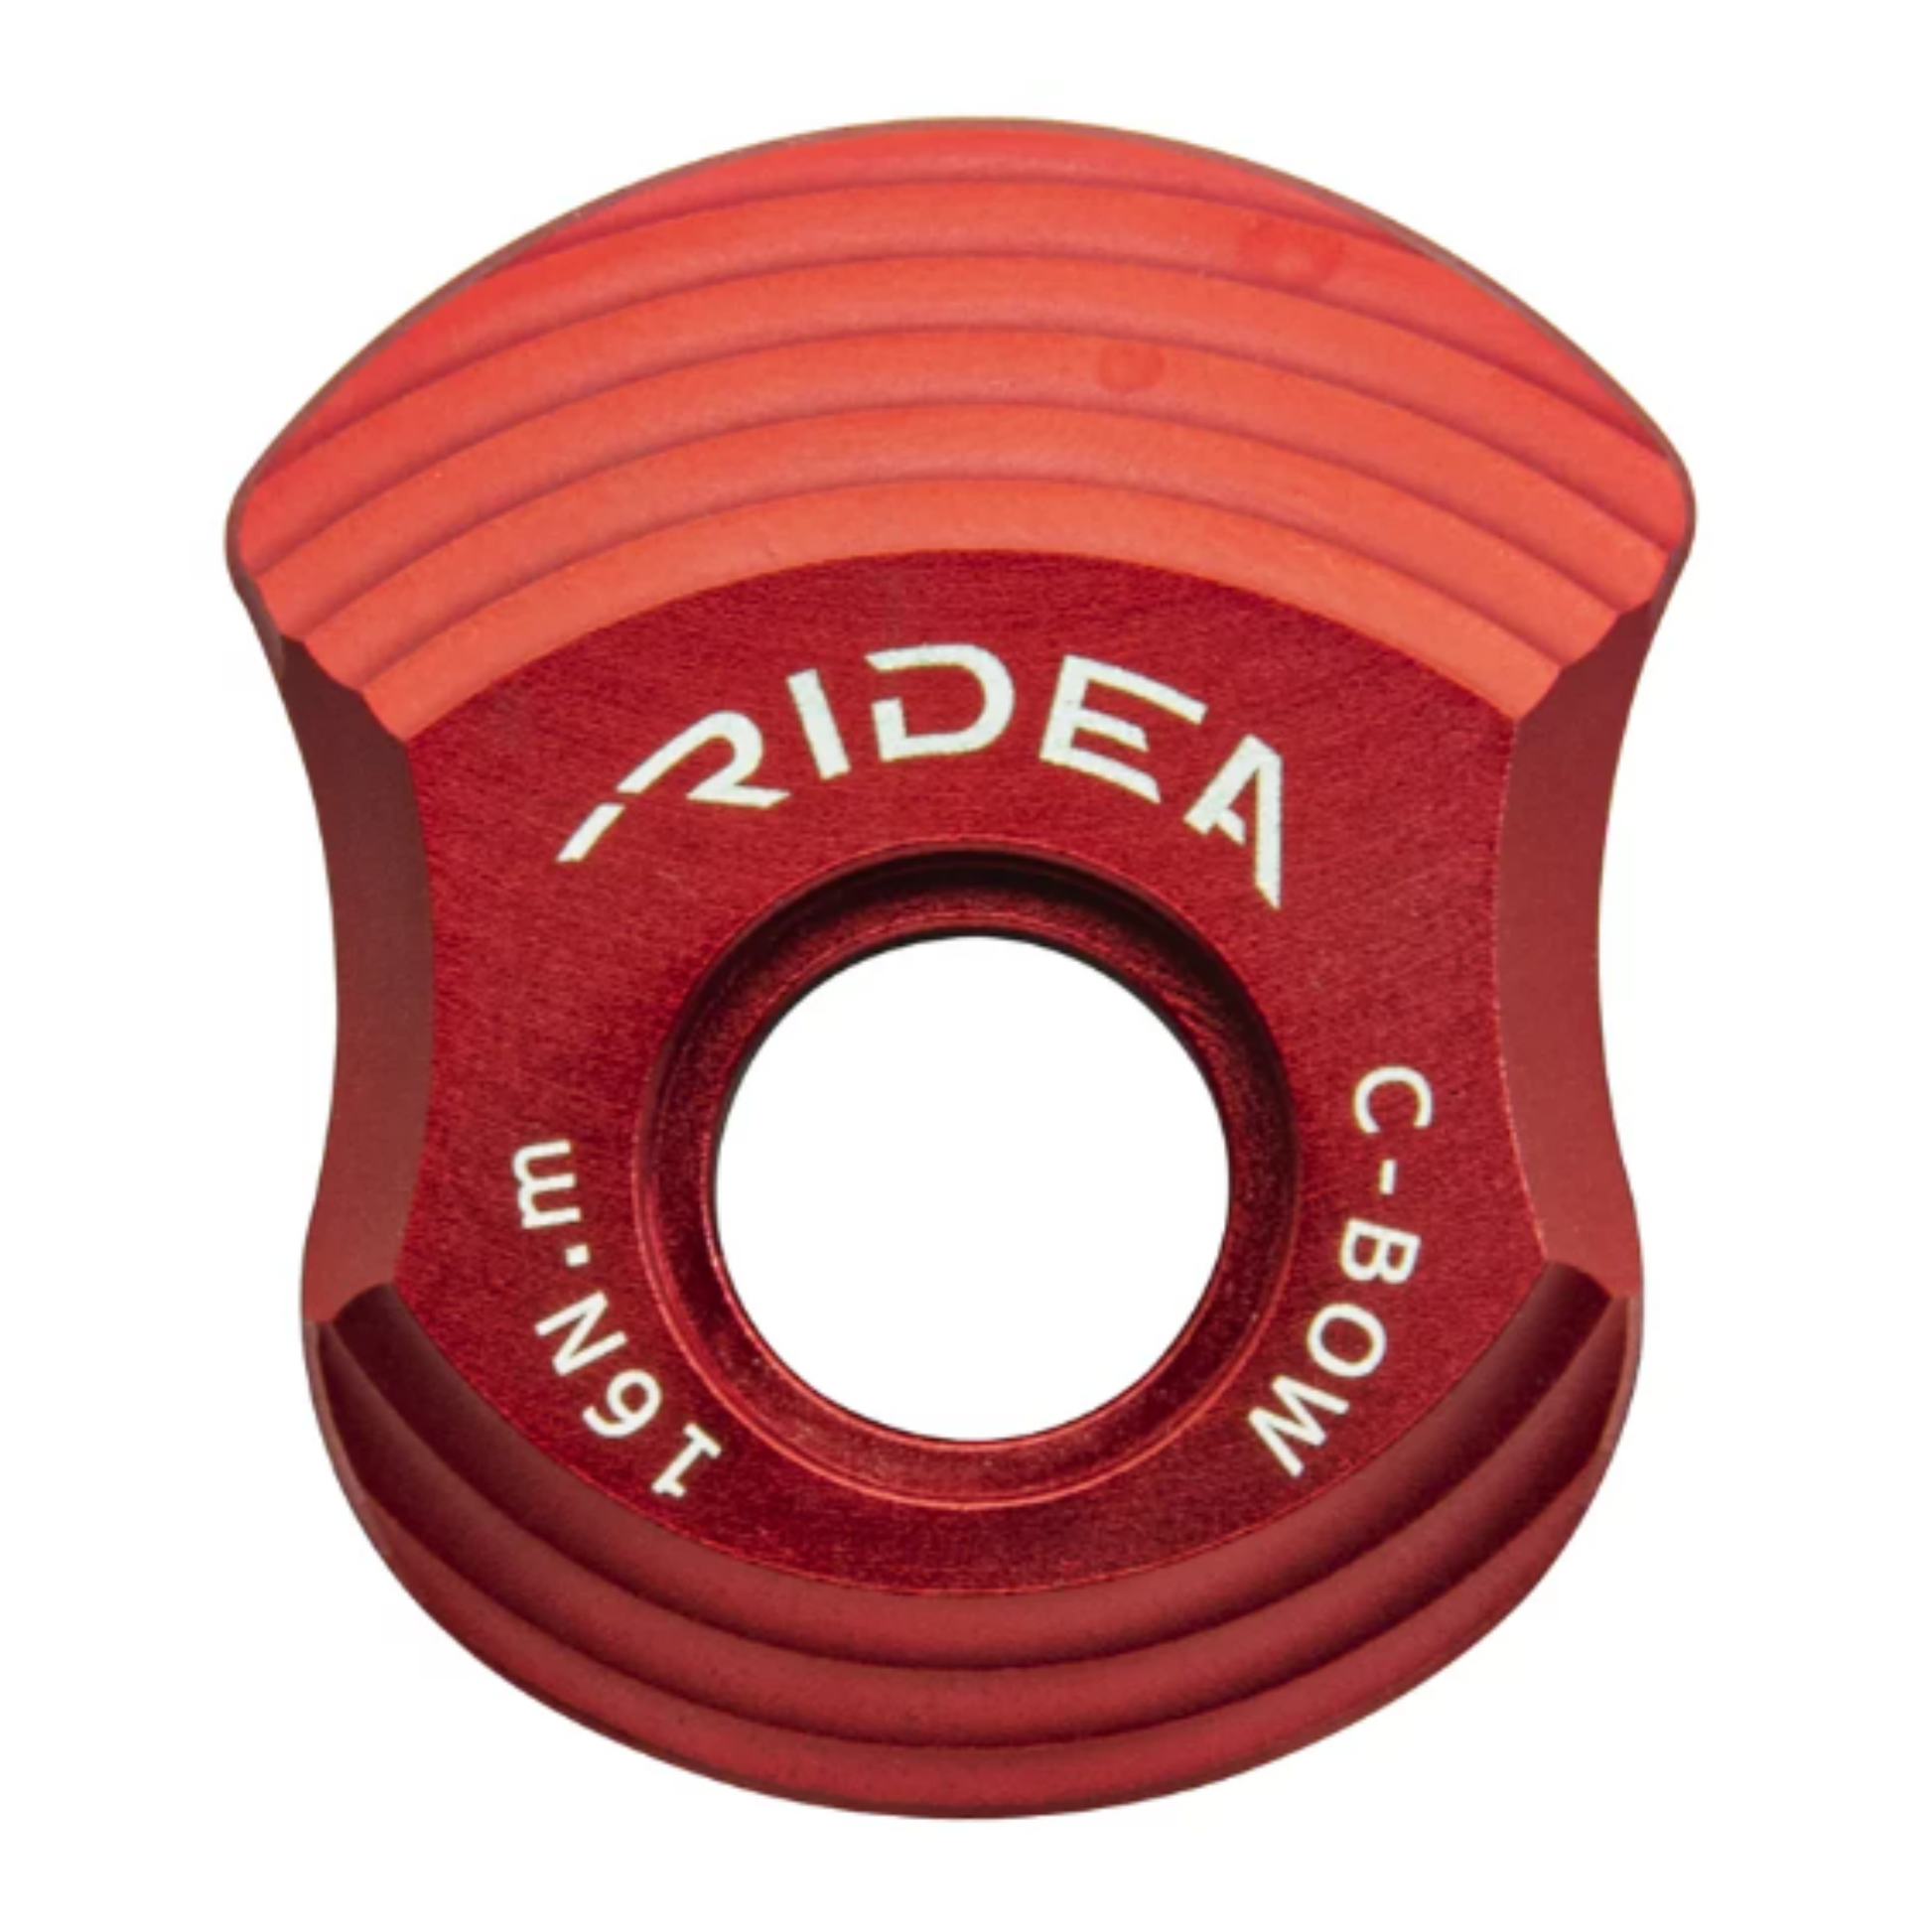 RIDEA - 6CBB Gecko Grip 鍛造碳纖維壁虎環陶瓷BB 系列– A2 Bike